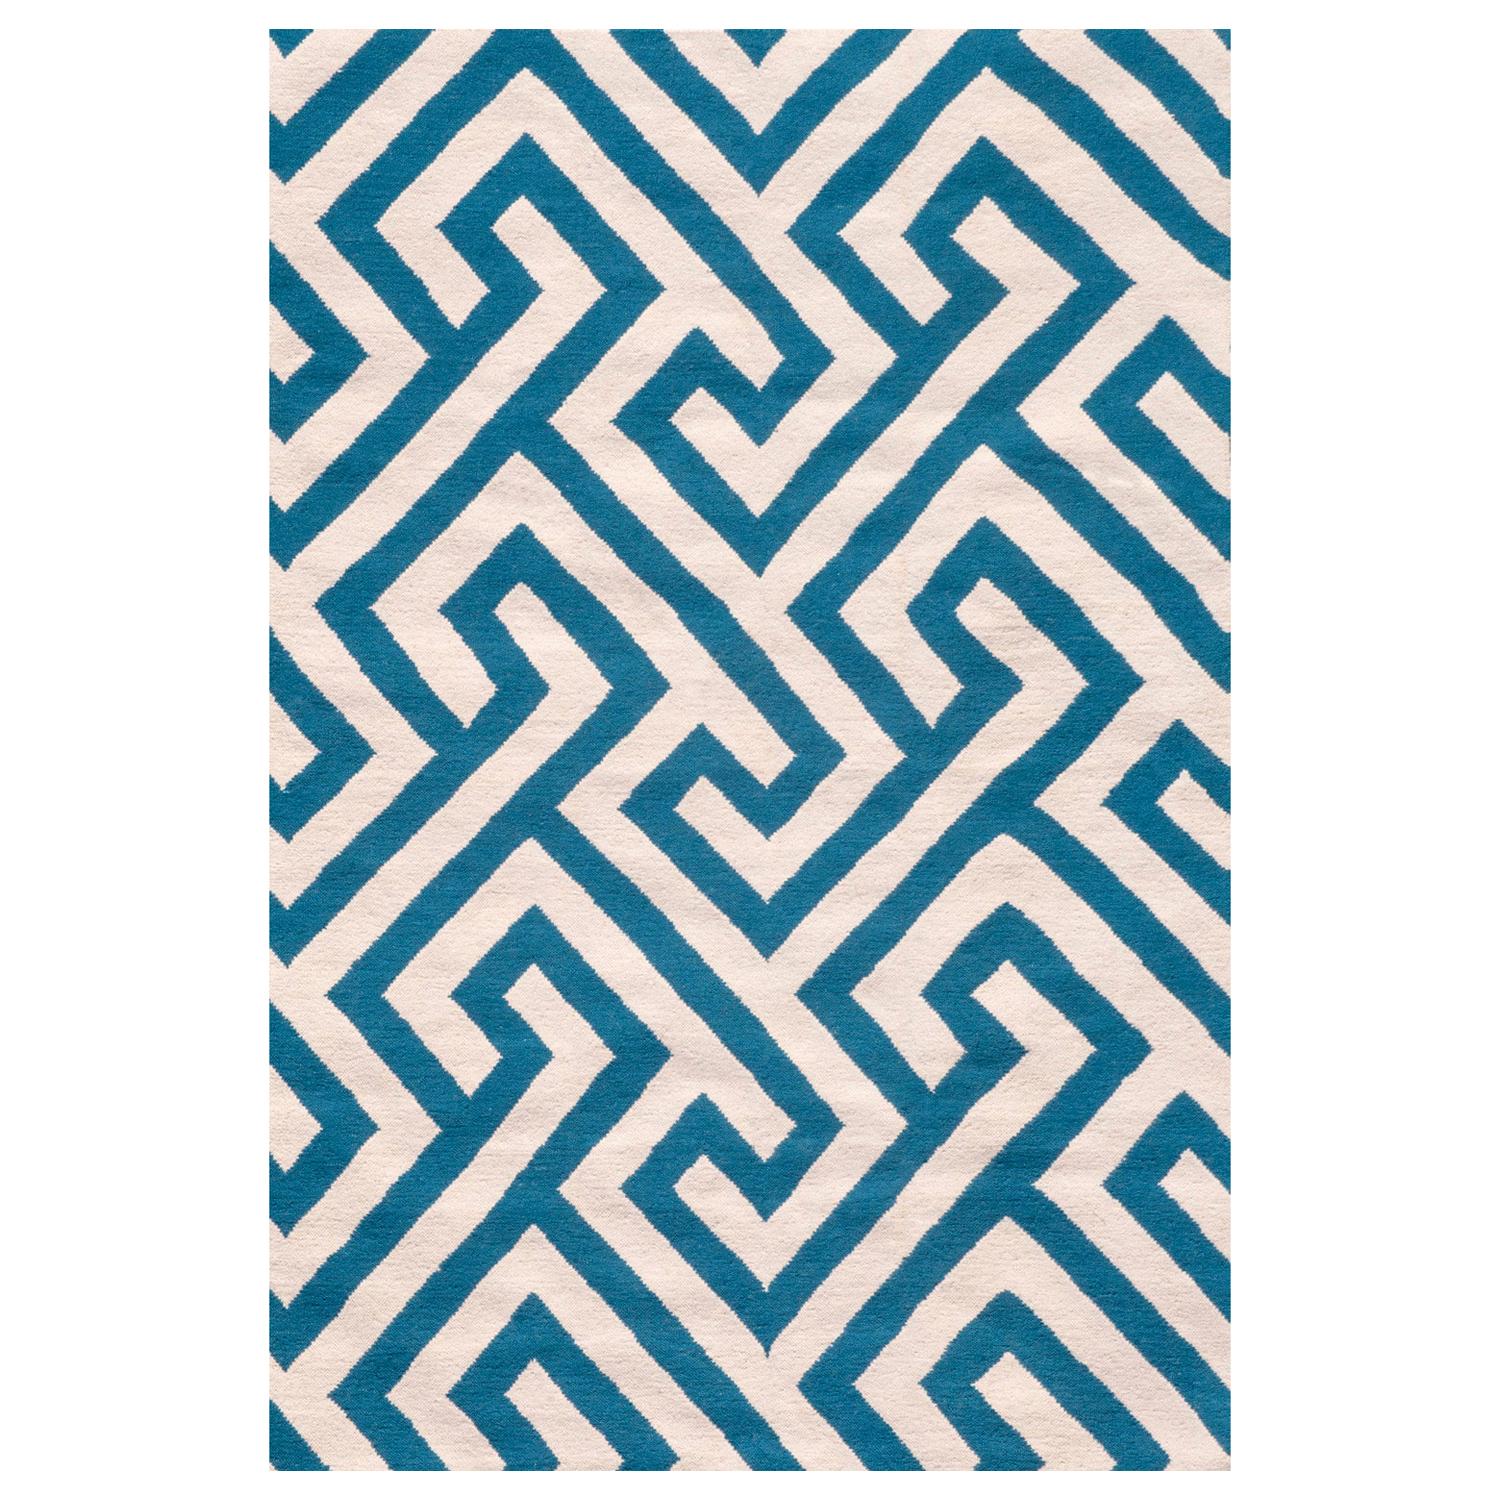 Modern Handwoven Flat-Weave Wool Kilim Rug White and Blue Geometric